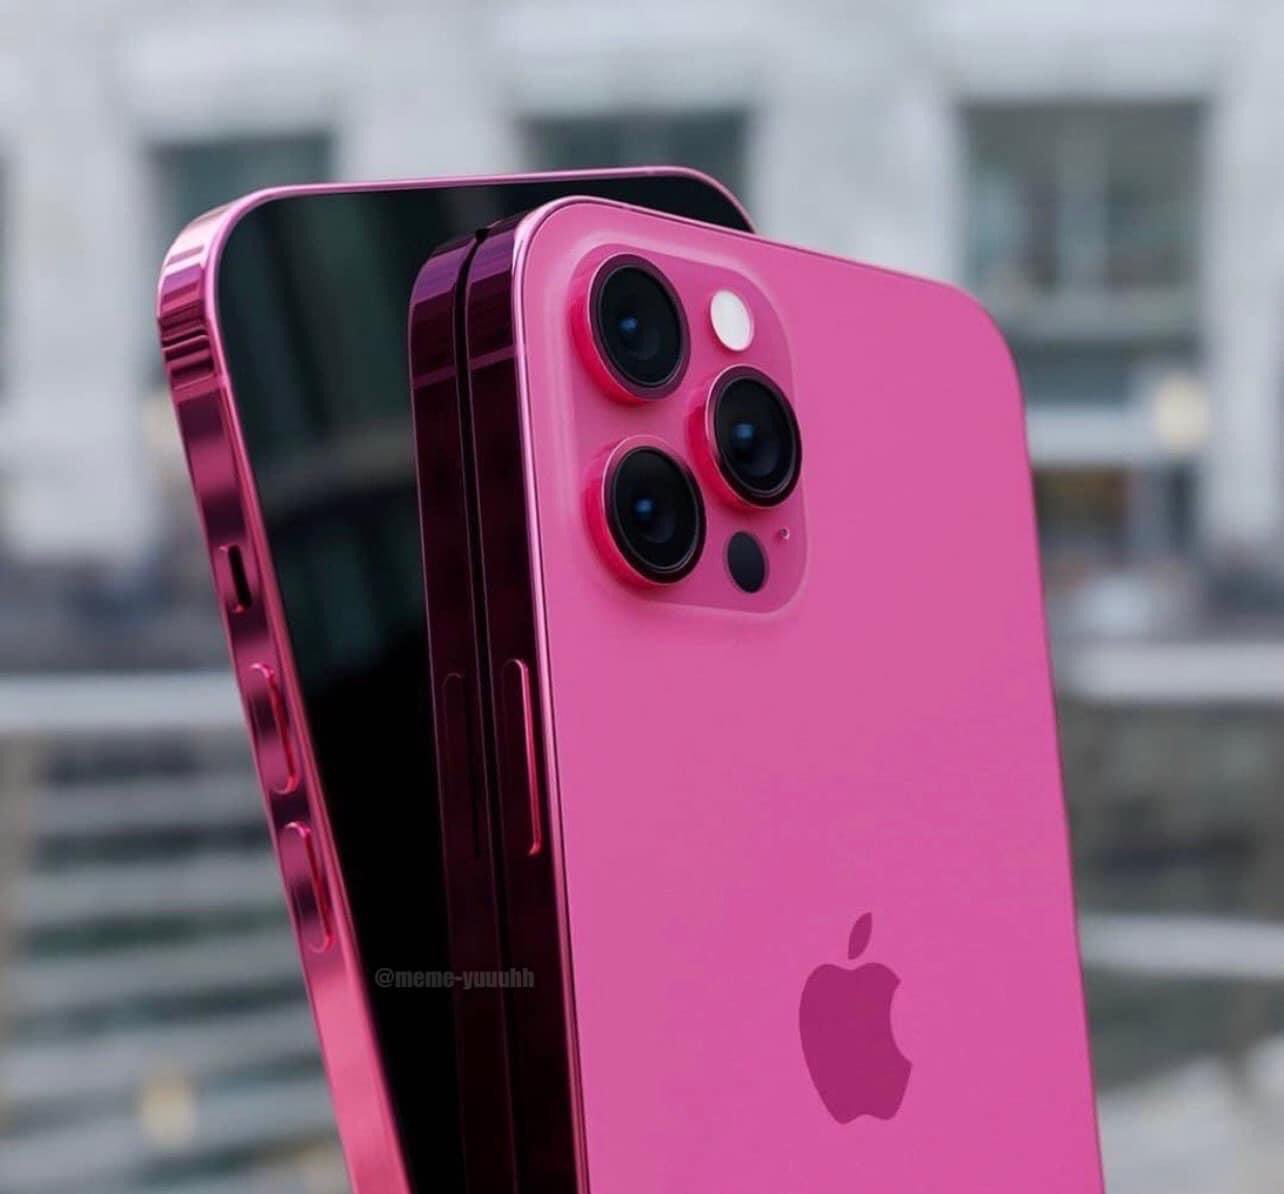 Bạn đang tìm kiếm một điện thoại chất lượng nhưng không muốn bỏ qua tính thẩm mỹ khiến tự tin trong mắt người khác? iPhone 13 màu hồng sẽ là sự lựa chọn hoàn hảo cho bạn! Mẫu điện thoại mới này sở hữu màu hồng sang trọng, tạo nên sự thoải mái và đẳng cấp khi sử dụng. Một bản nâng cấp đáng giá để thay thế cho chiếc điện thoại cũ!